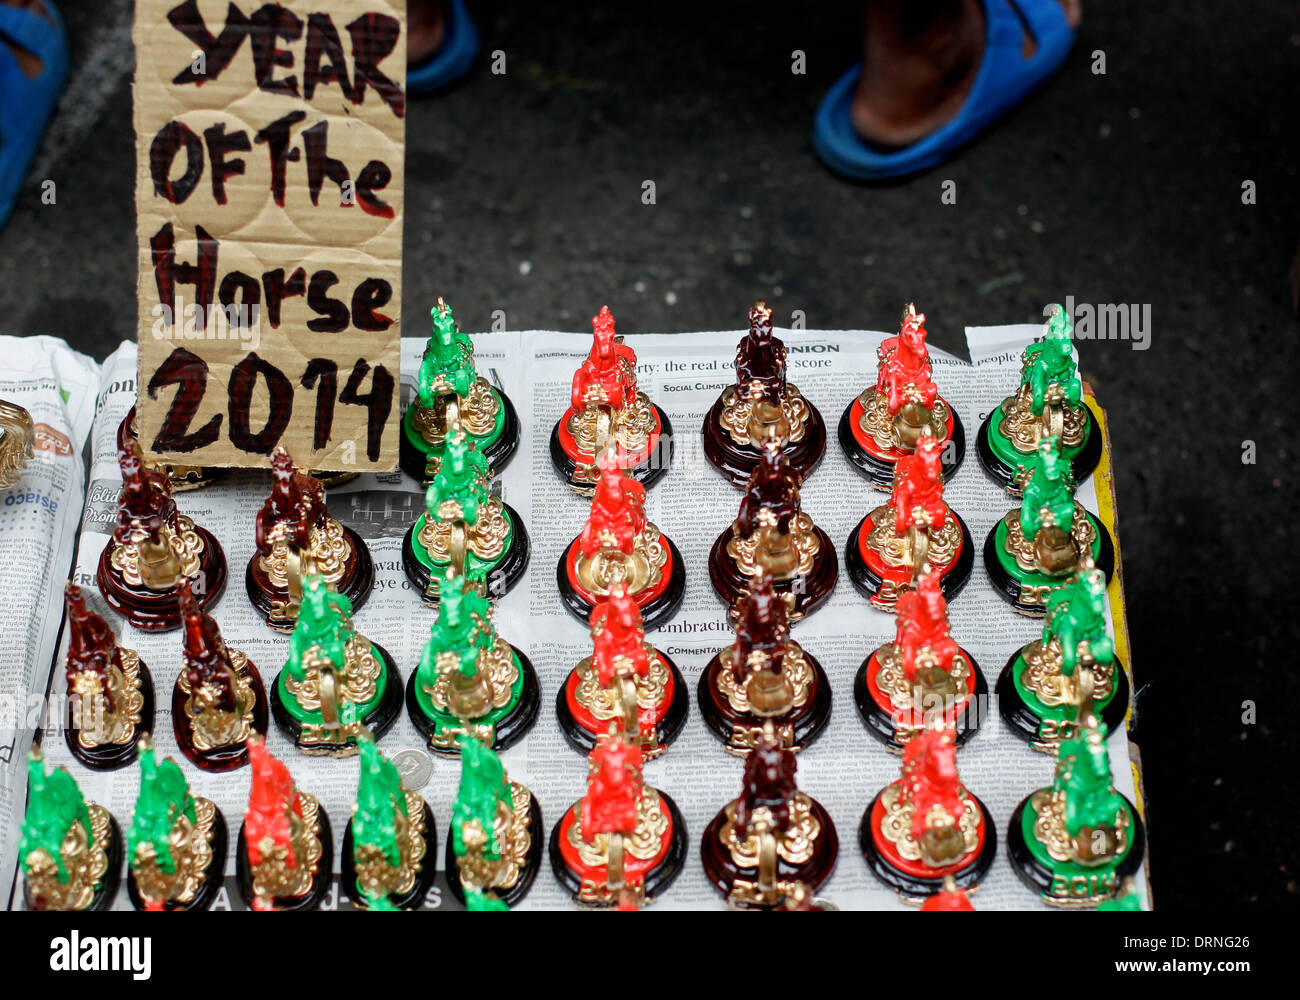 Manille, Philippines. 30 janvier 2014. Lucky Charms sous la forme de chevaux sont vendus dans les rues de Chinatown Manille un jour avant la célébration du Nouvel An chinois, l'année du cheval le 30 janvier 2014. Photo par Mark Cristino/Alamy Live News Banque D'Images